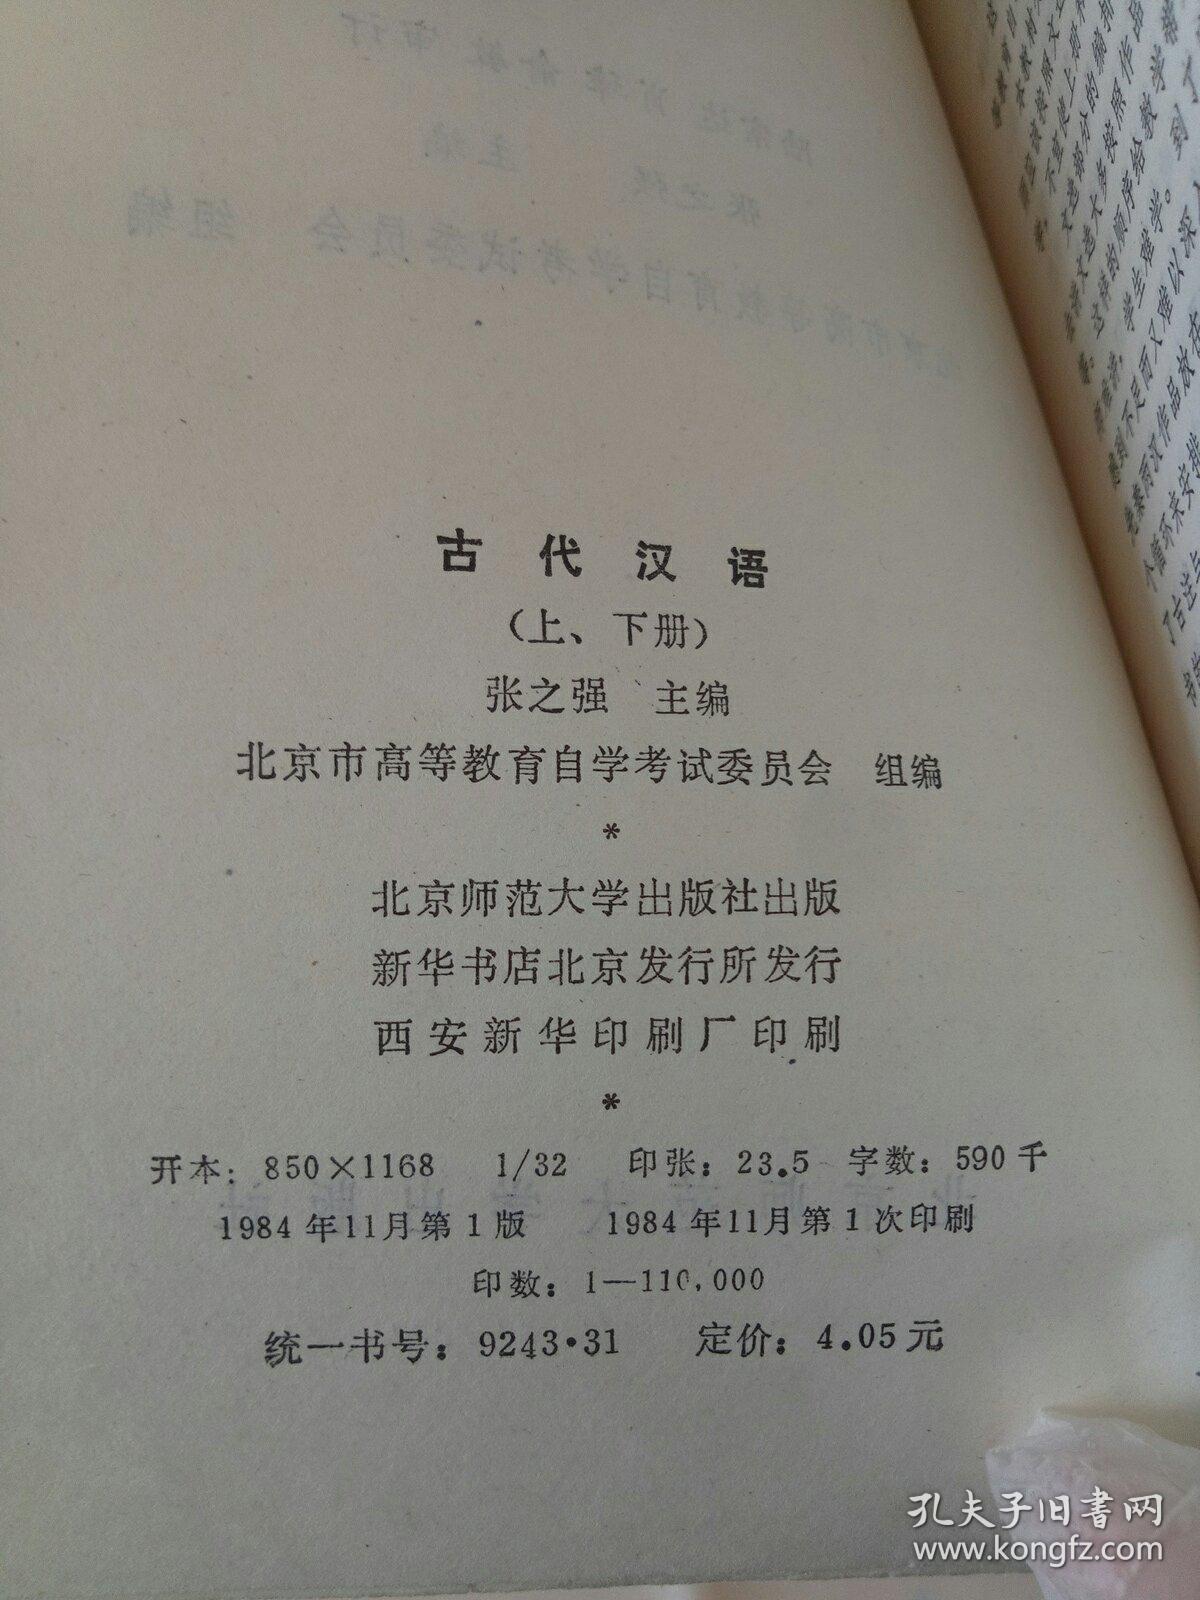 古代汉语(上册)。